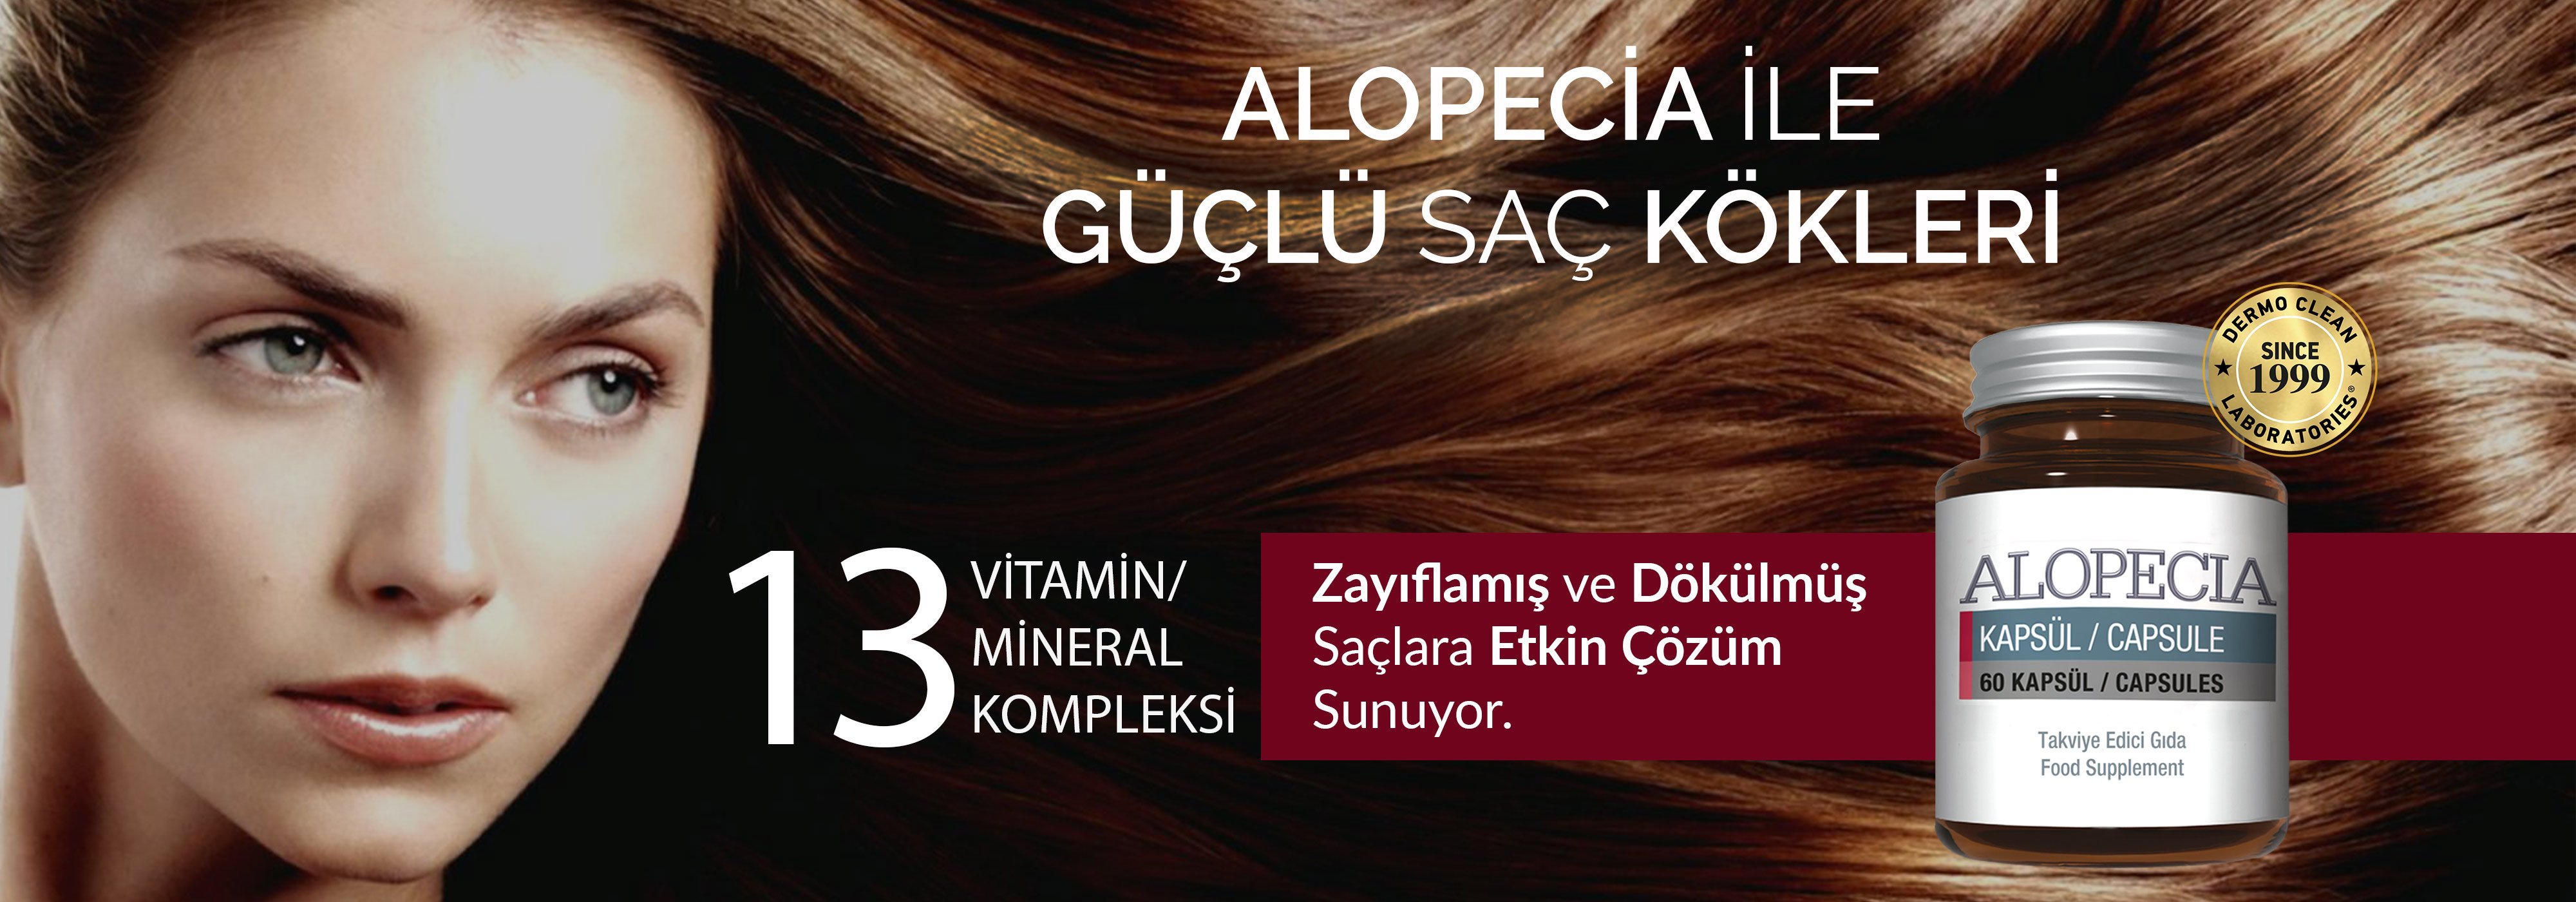 Alopecia 60 Kapsül